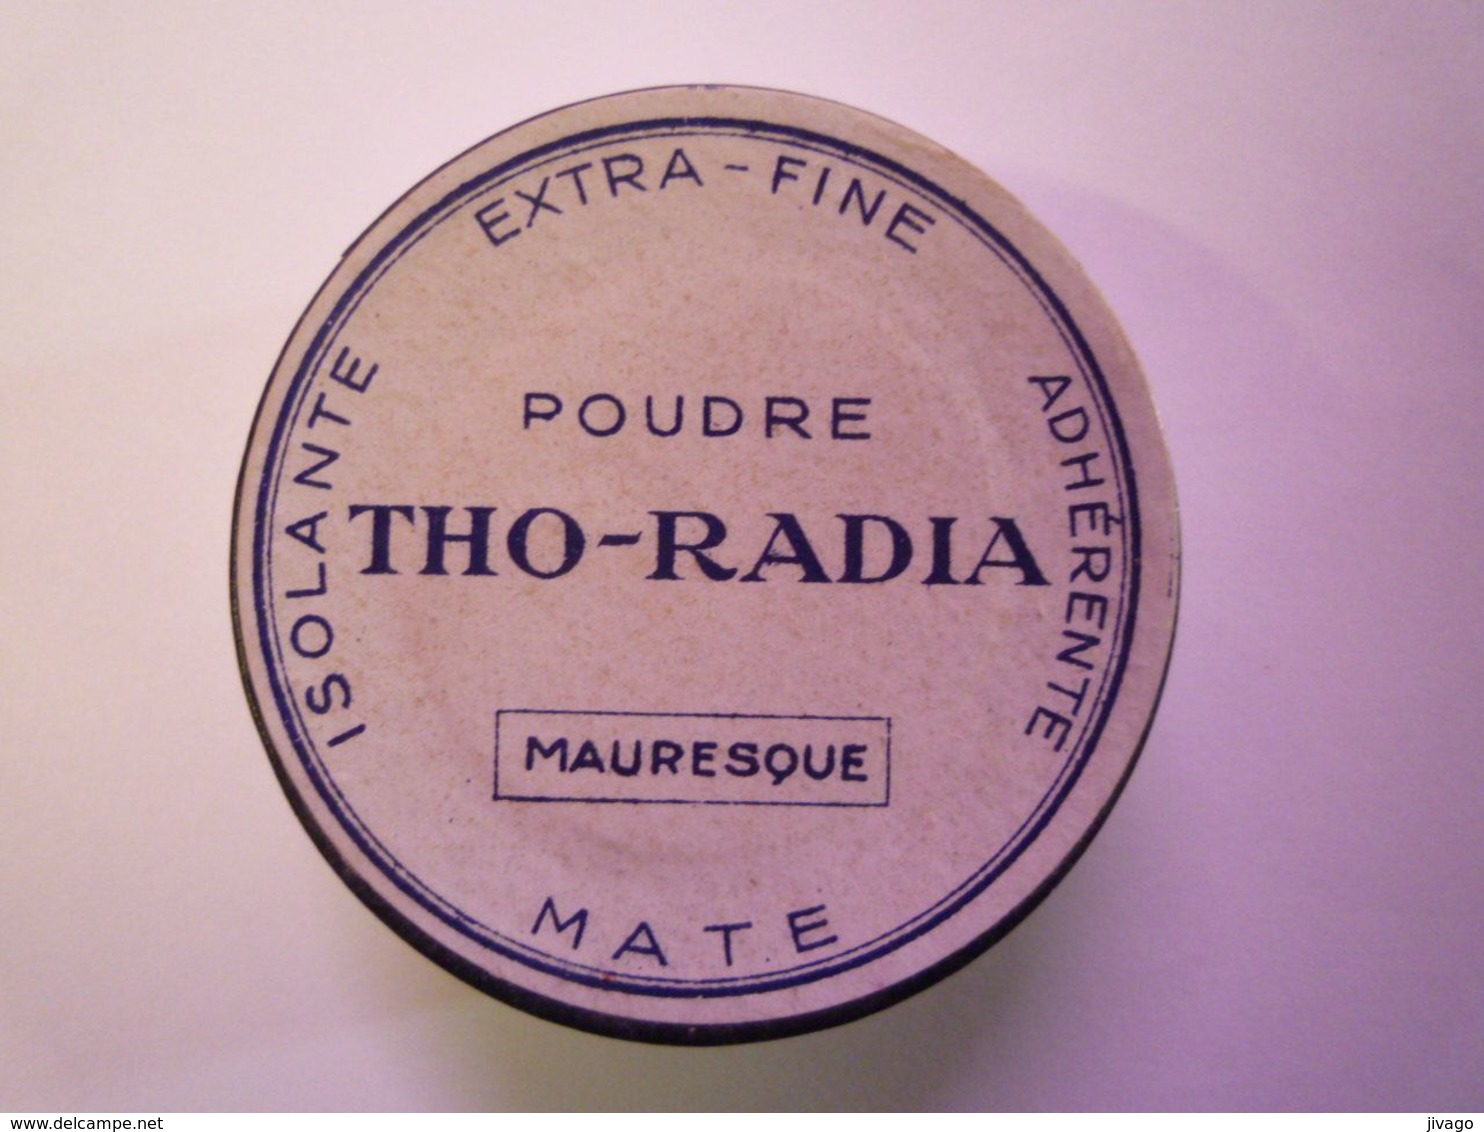 2020 - 6921  RARE BOÎTE à POUDRE  " THO-RADIA "  (A Base De Thorium Et De Radium !!!)   XXXX - Beauty Products